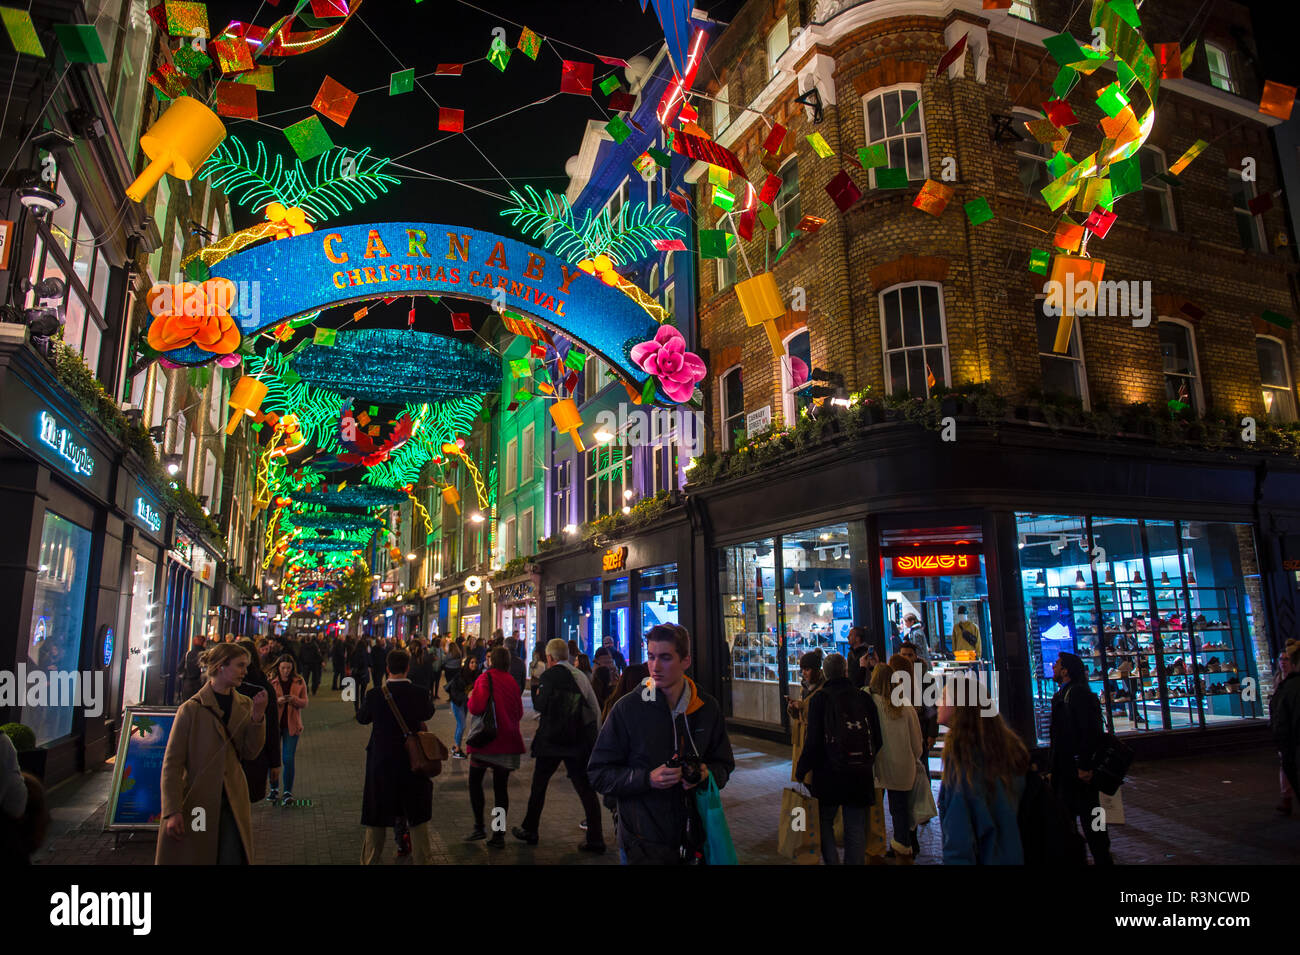 LONDON - ca. Dezember 2017: Käufer Masse des Einzelhandels der Carnaby Street, für die Ferien mit einem "Thema Weihnachten Carnival" eingerichtet. Stockfoto